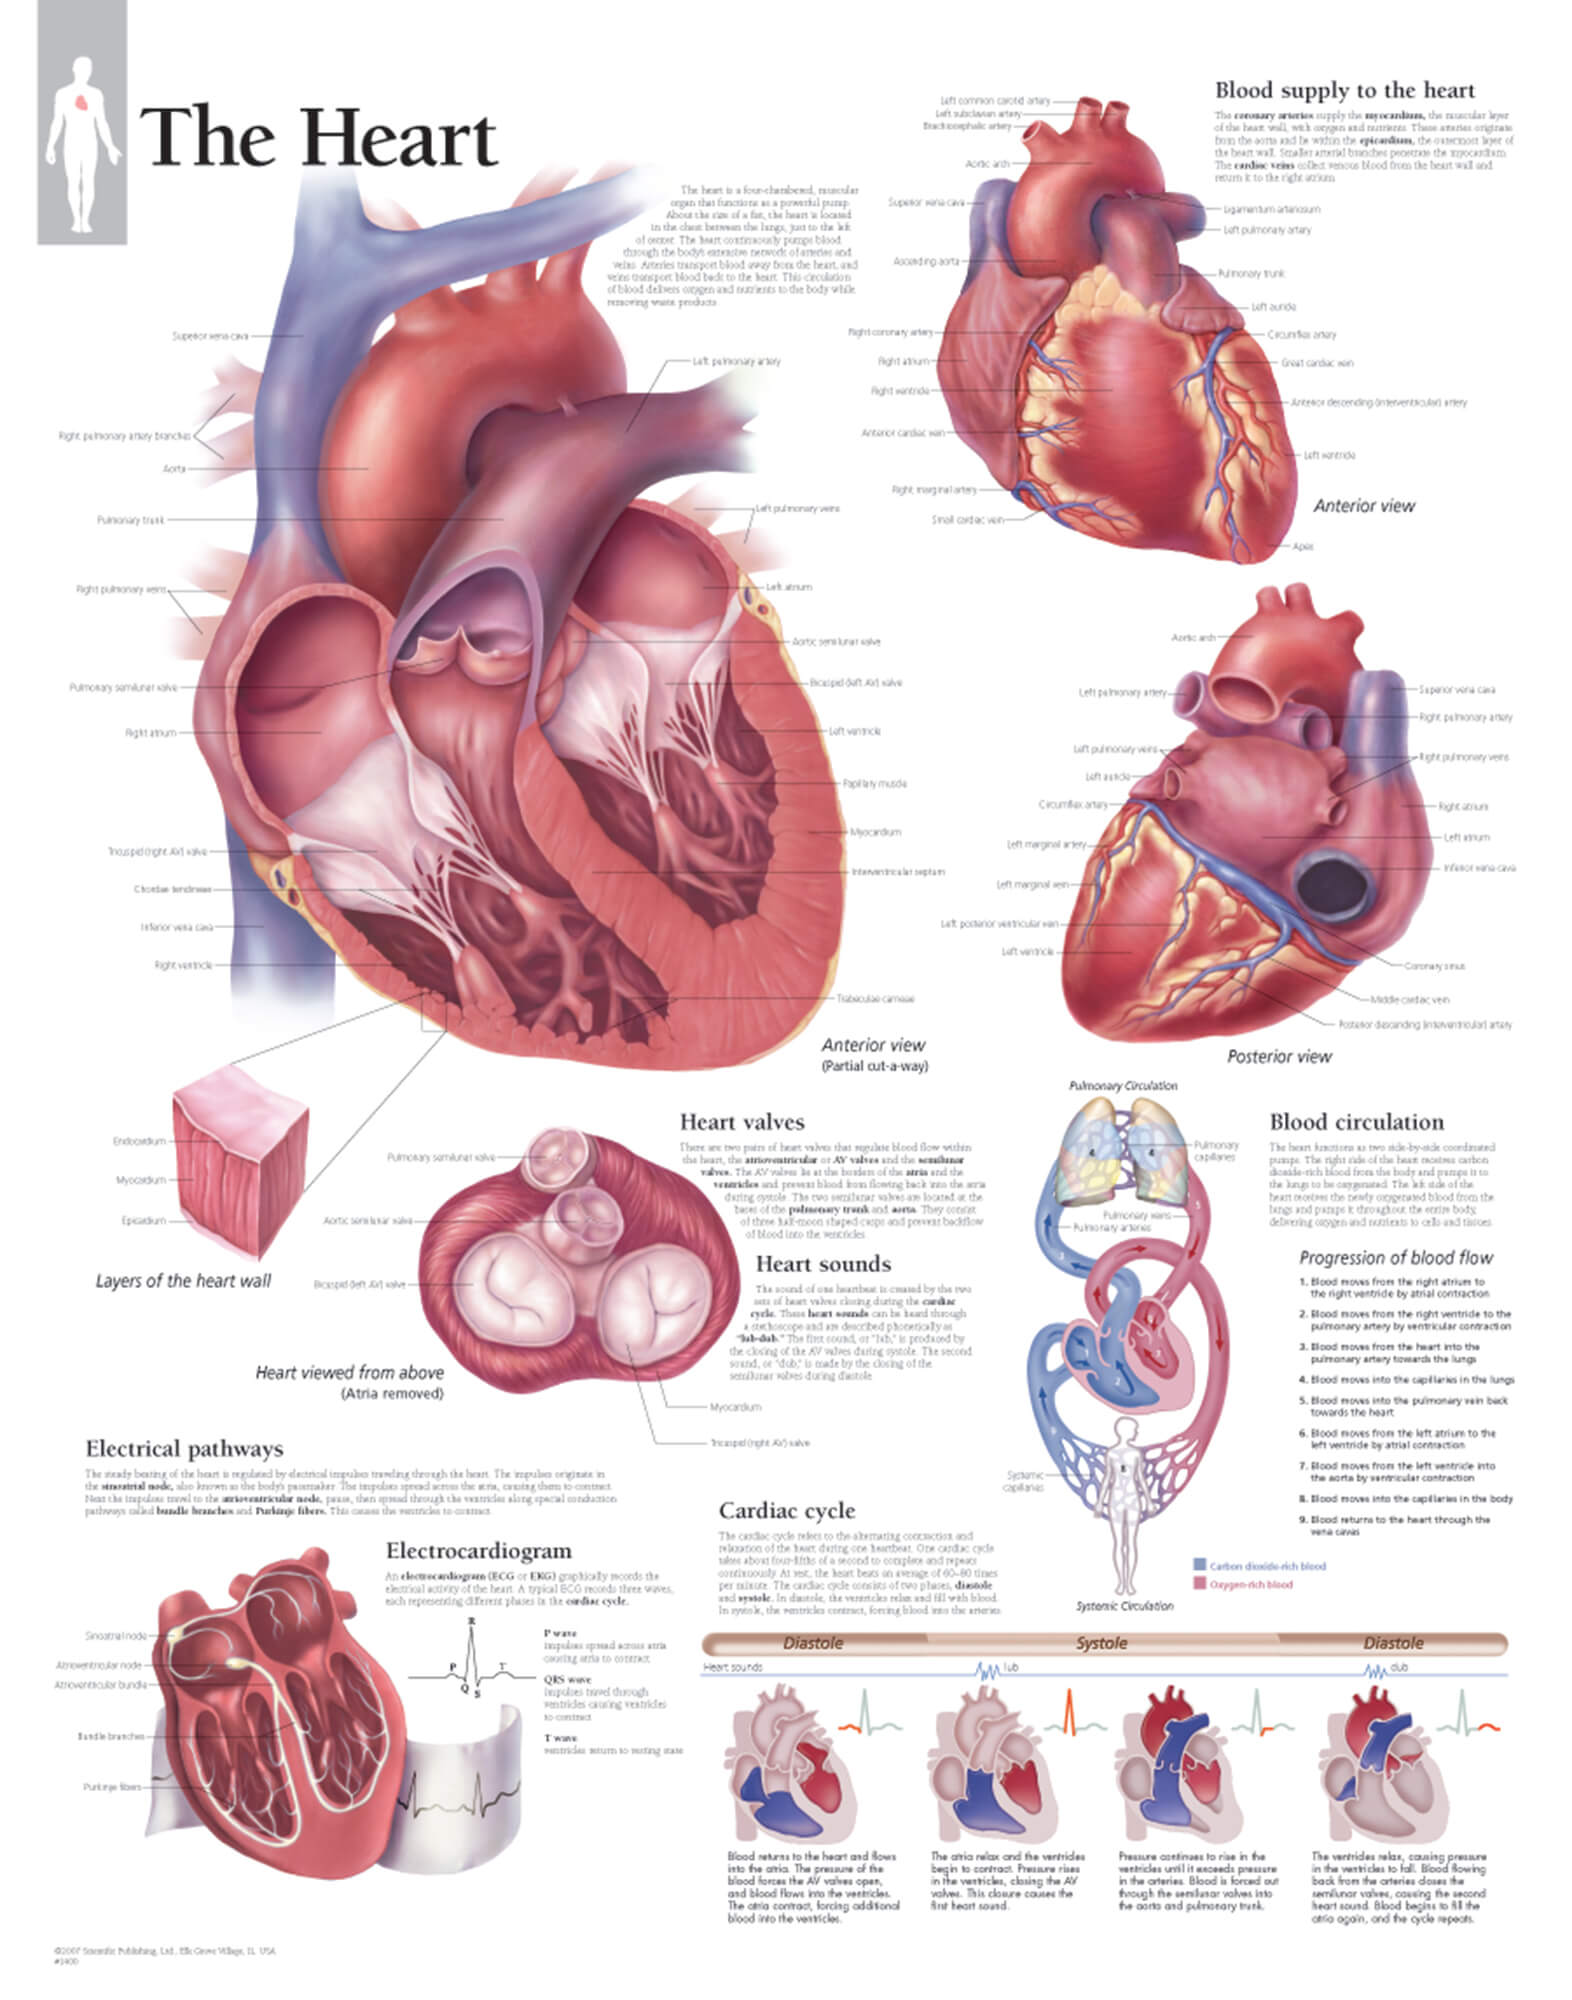 external structure of human heart